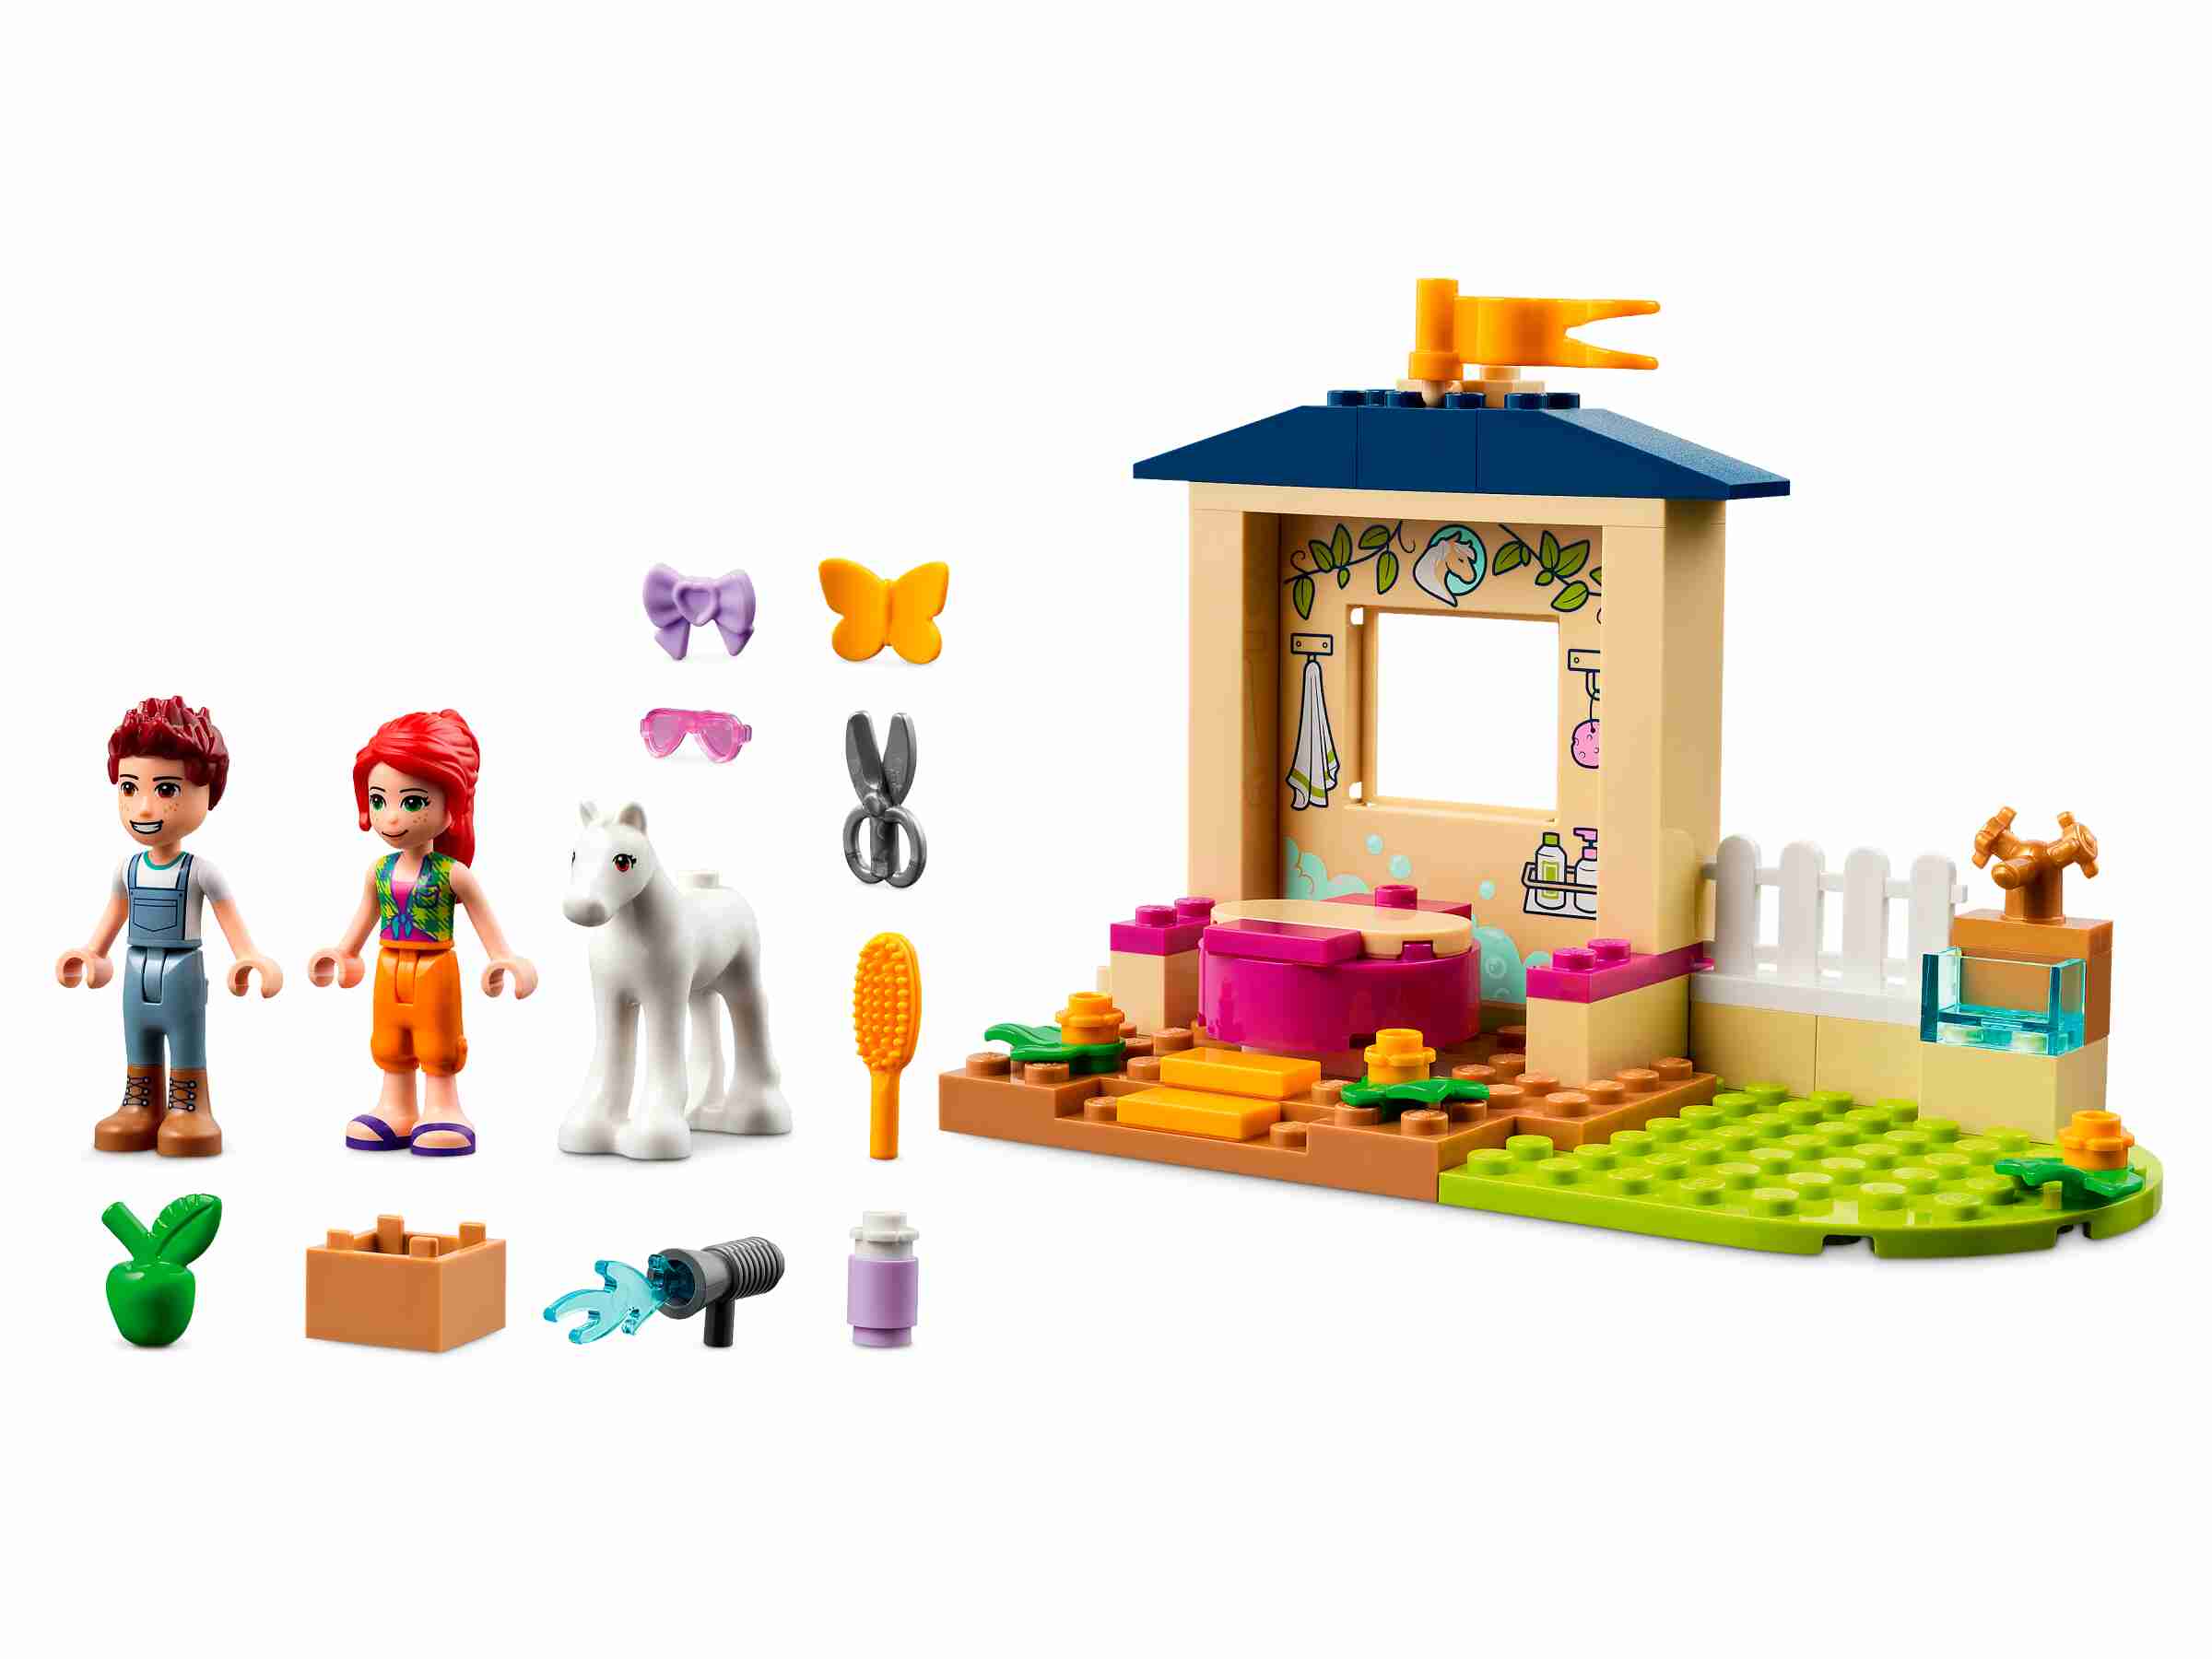 LEGO 41696 Friends Ponypflege, Pferdestall mit Pferd-Figur und Mia Mini-Puppe